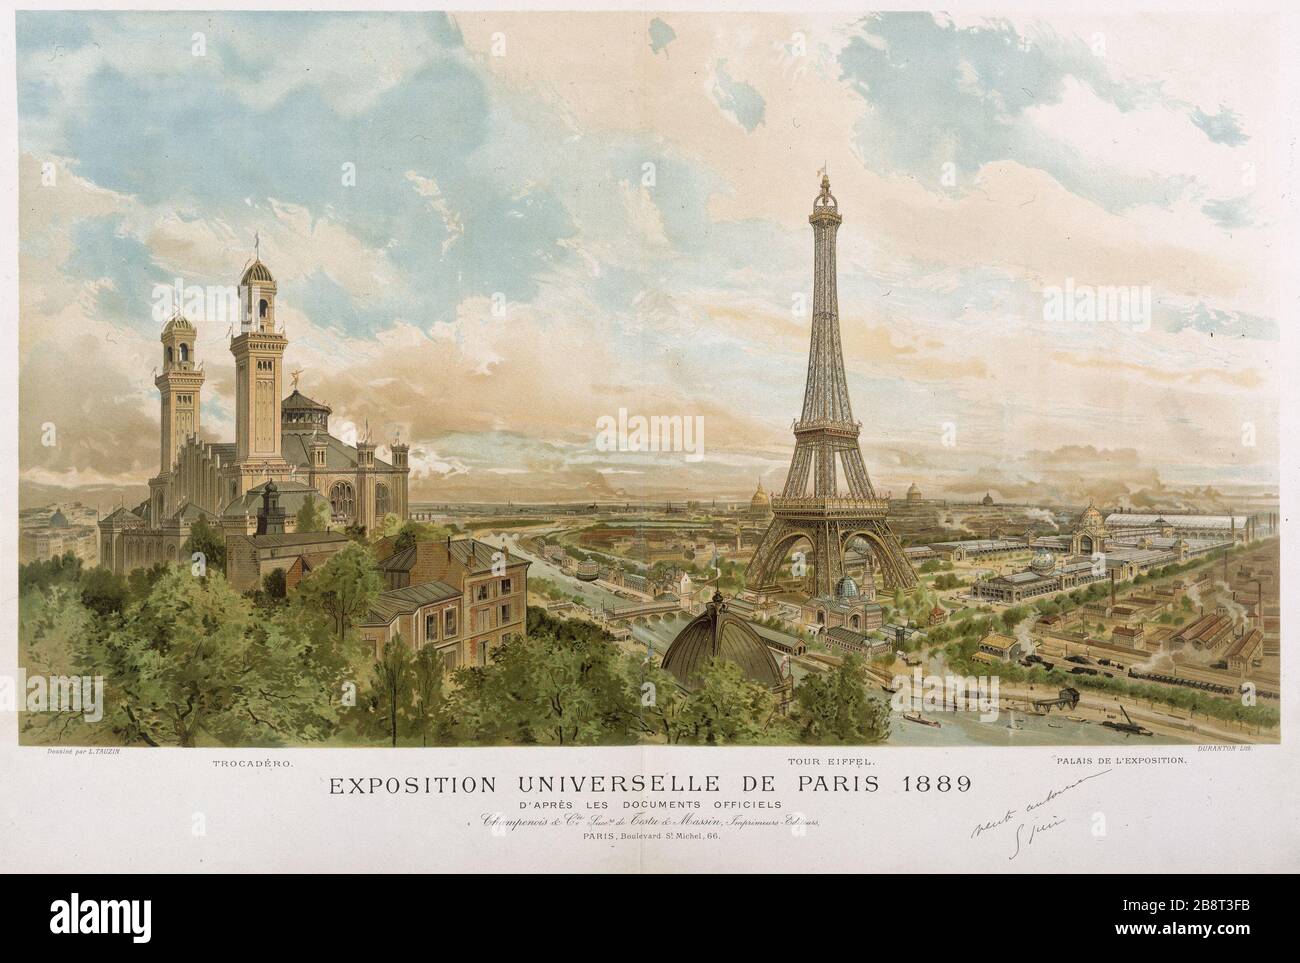 Paris Exposition 1889 Duranton et Louis Tauzin (1842-1915). Exposition universelle de Paris, 1889, d'après les documents officiels. Paris, musée Carnavalet. Stock Photo